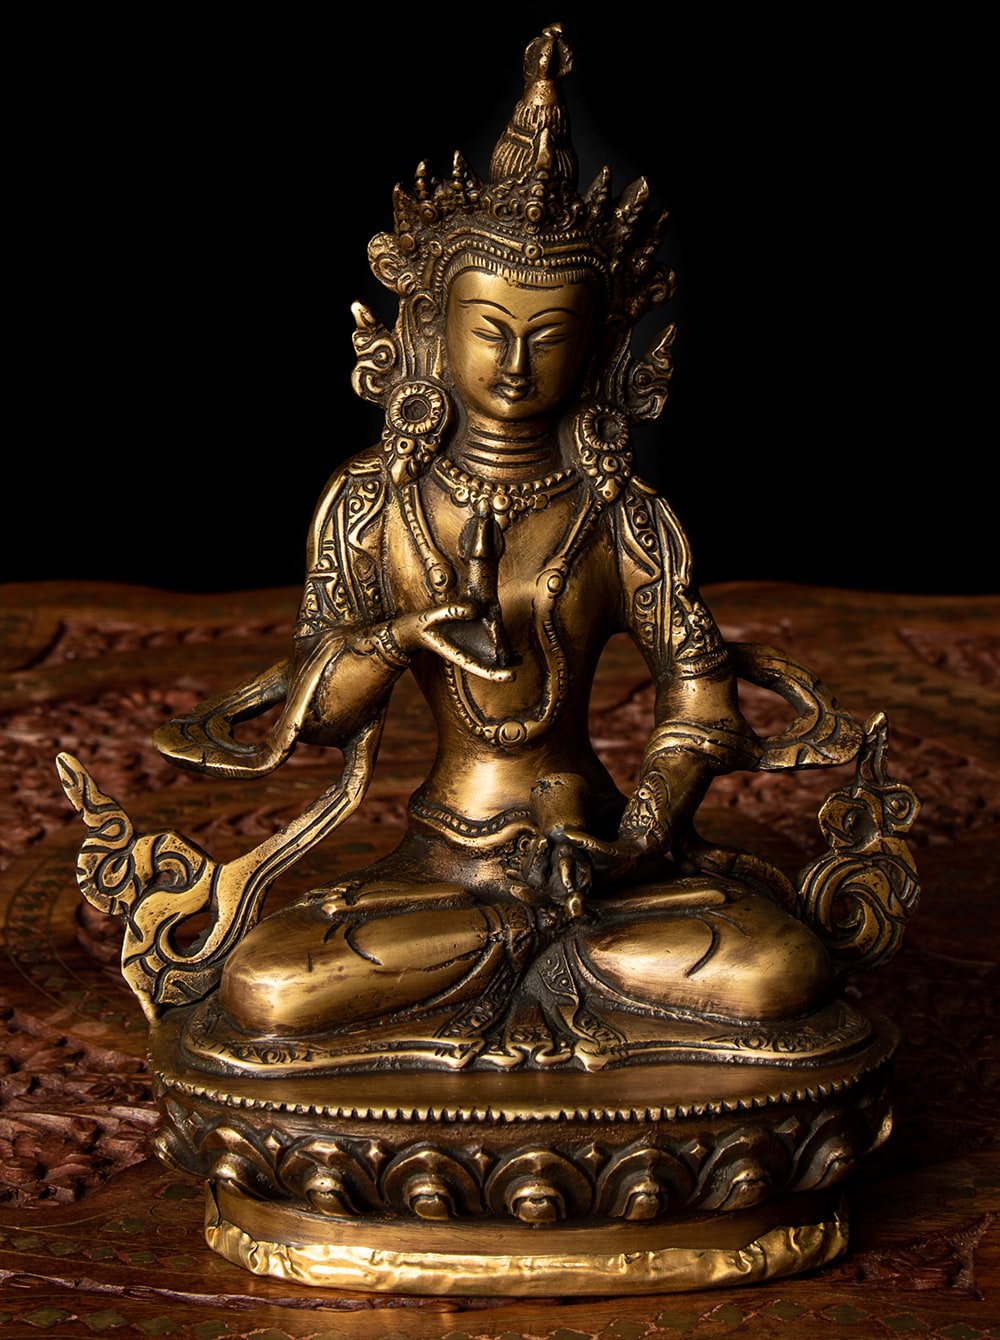 【送料無料】 ヴァジュラ サットゥヴァ 金剛薩た 22cm / バジュラ サットバ 菩薩 神様像 ブラス 仏像 チベット 密教 ブッダ像 エスニッ